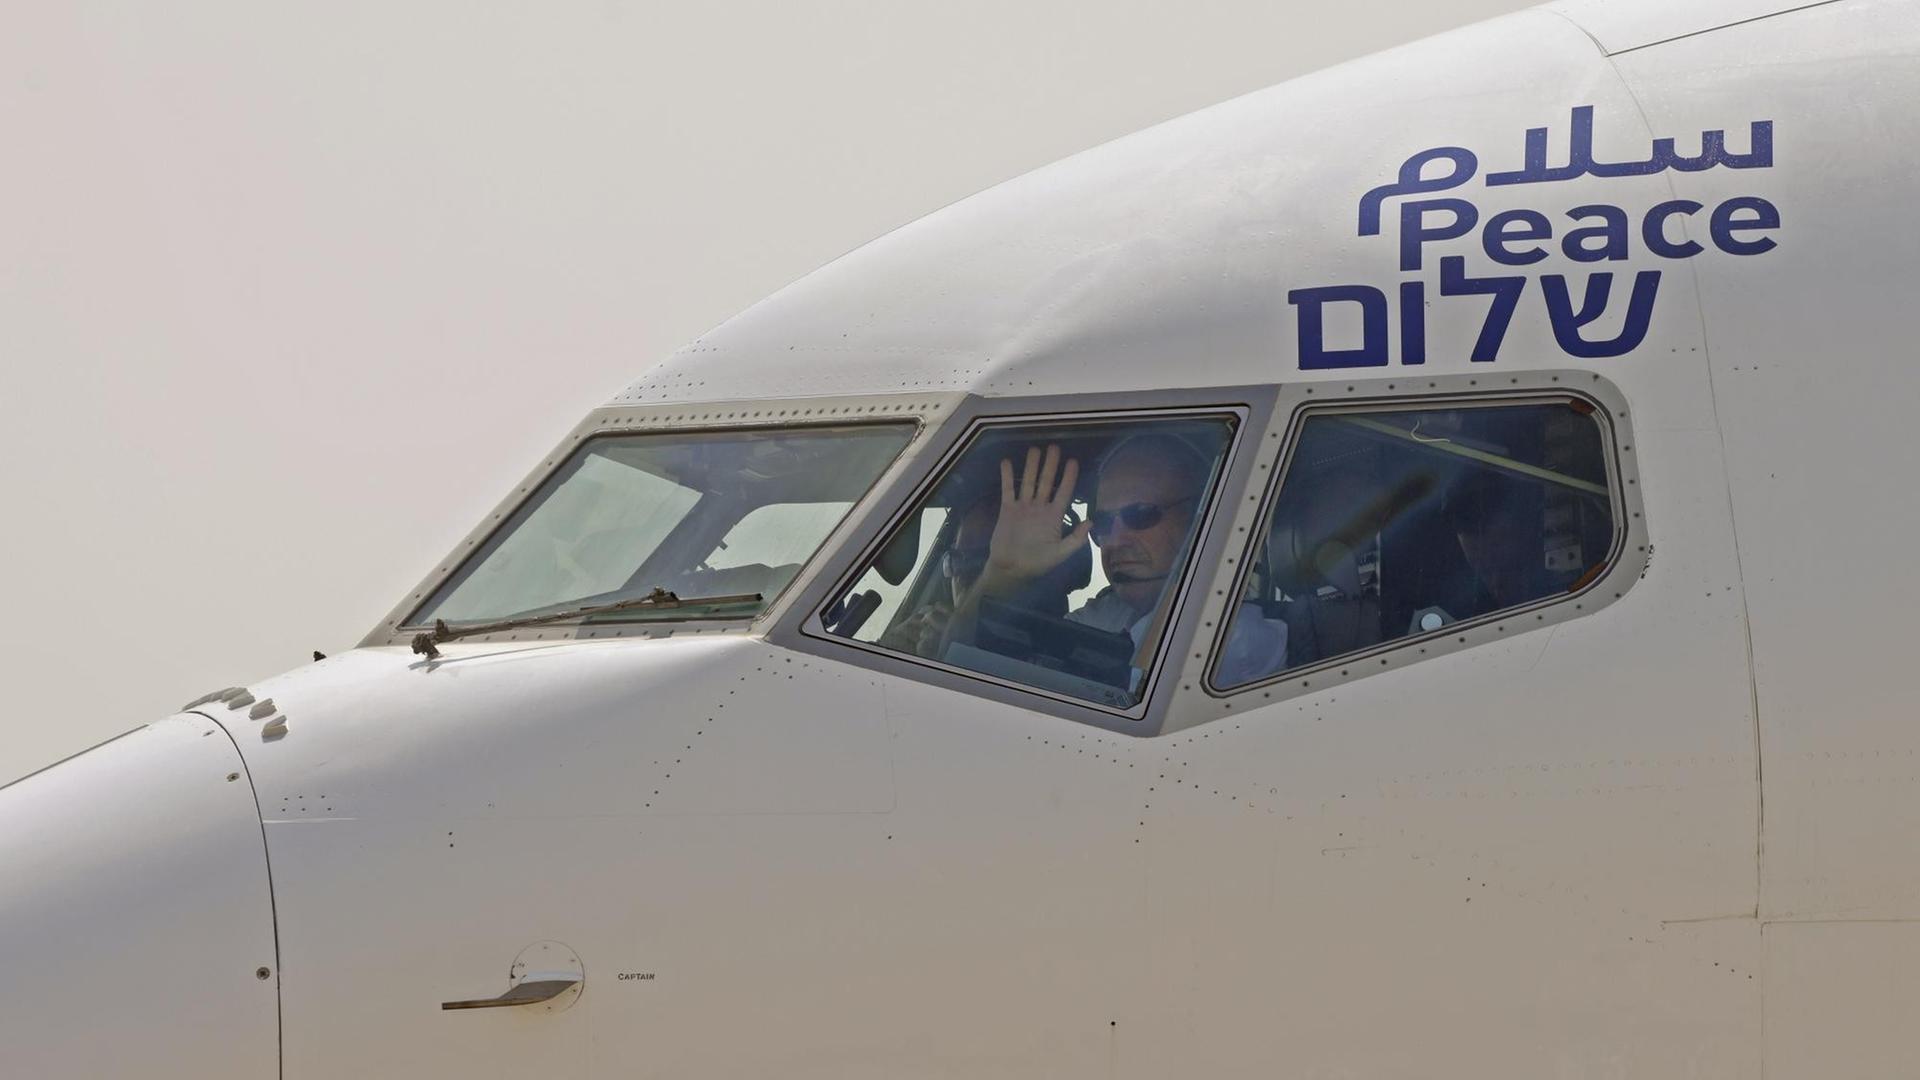 31.08.2020, Israel, Kapitän der Fluggesellschaft El Al winkt vor dem Start nach Abu Dhabi, dem ersten Direktflug von Israel in die Vereinigten Arabischen Emirate, mit einer US-amerikanische und israelische Delegation an Bord.